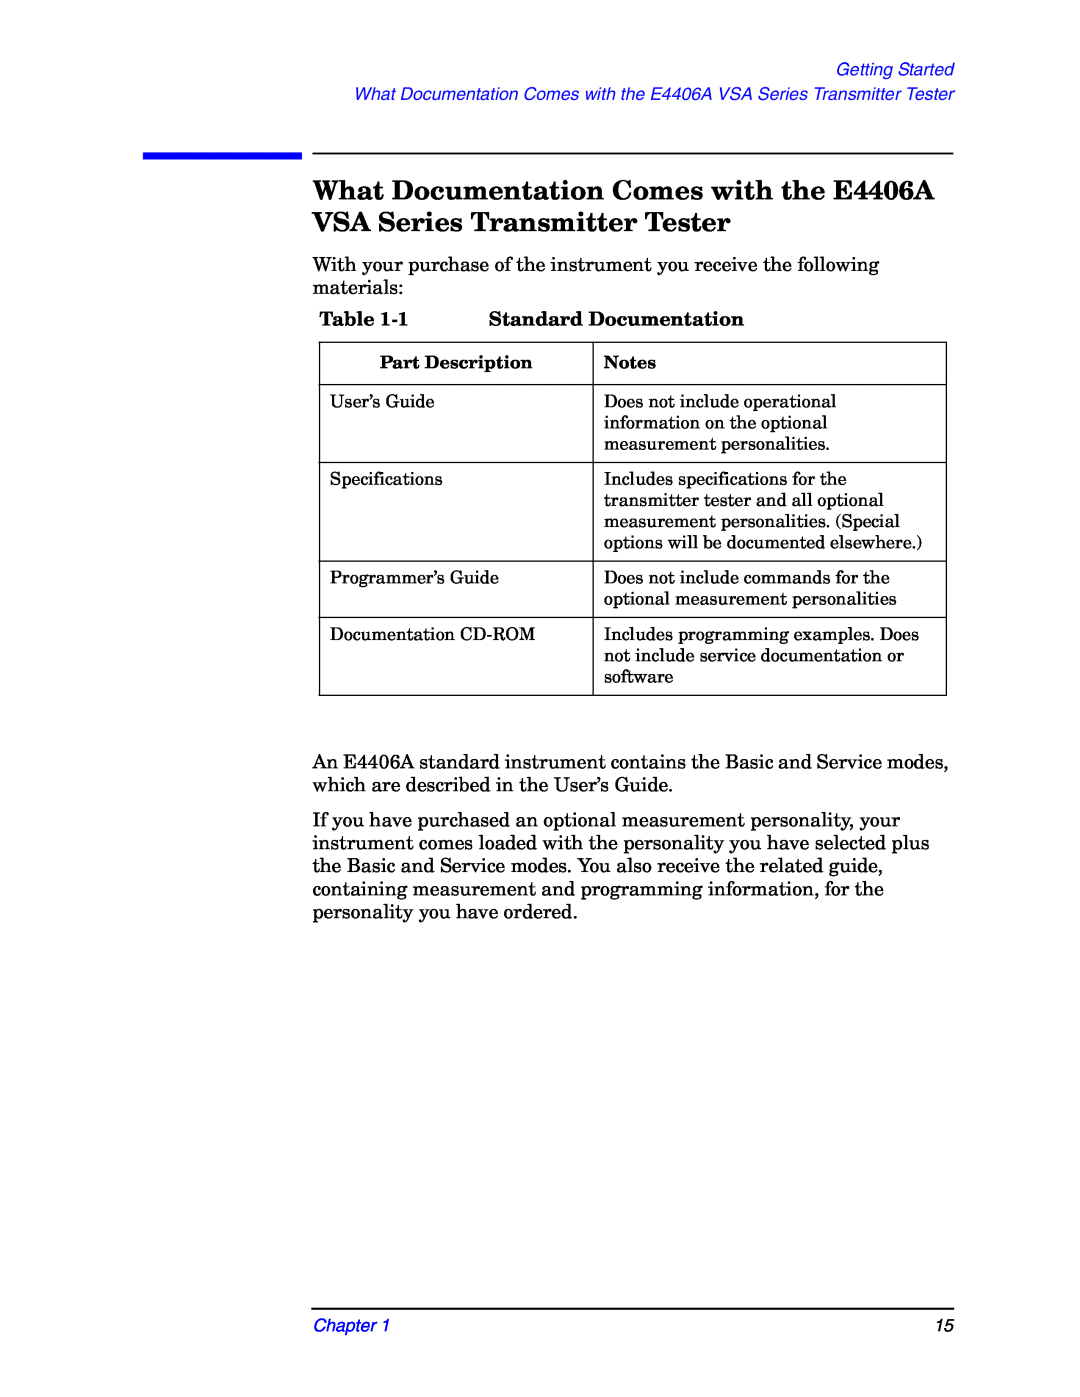 Agilent Technologies E4406A manual Table, Standard Documentation, Part Description, Notes 